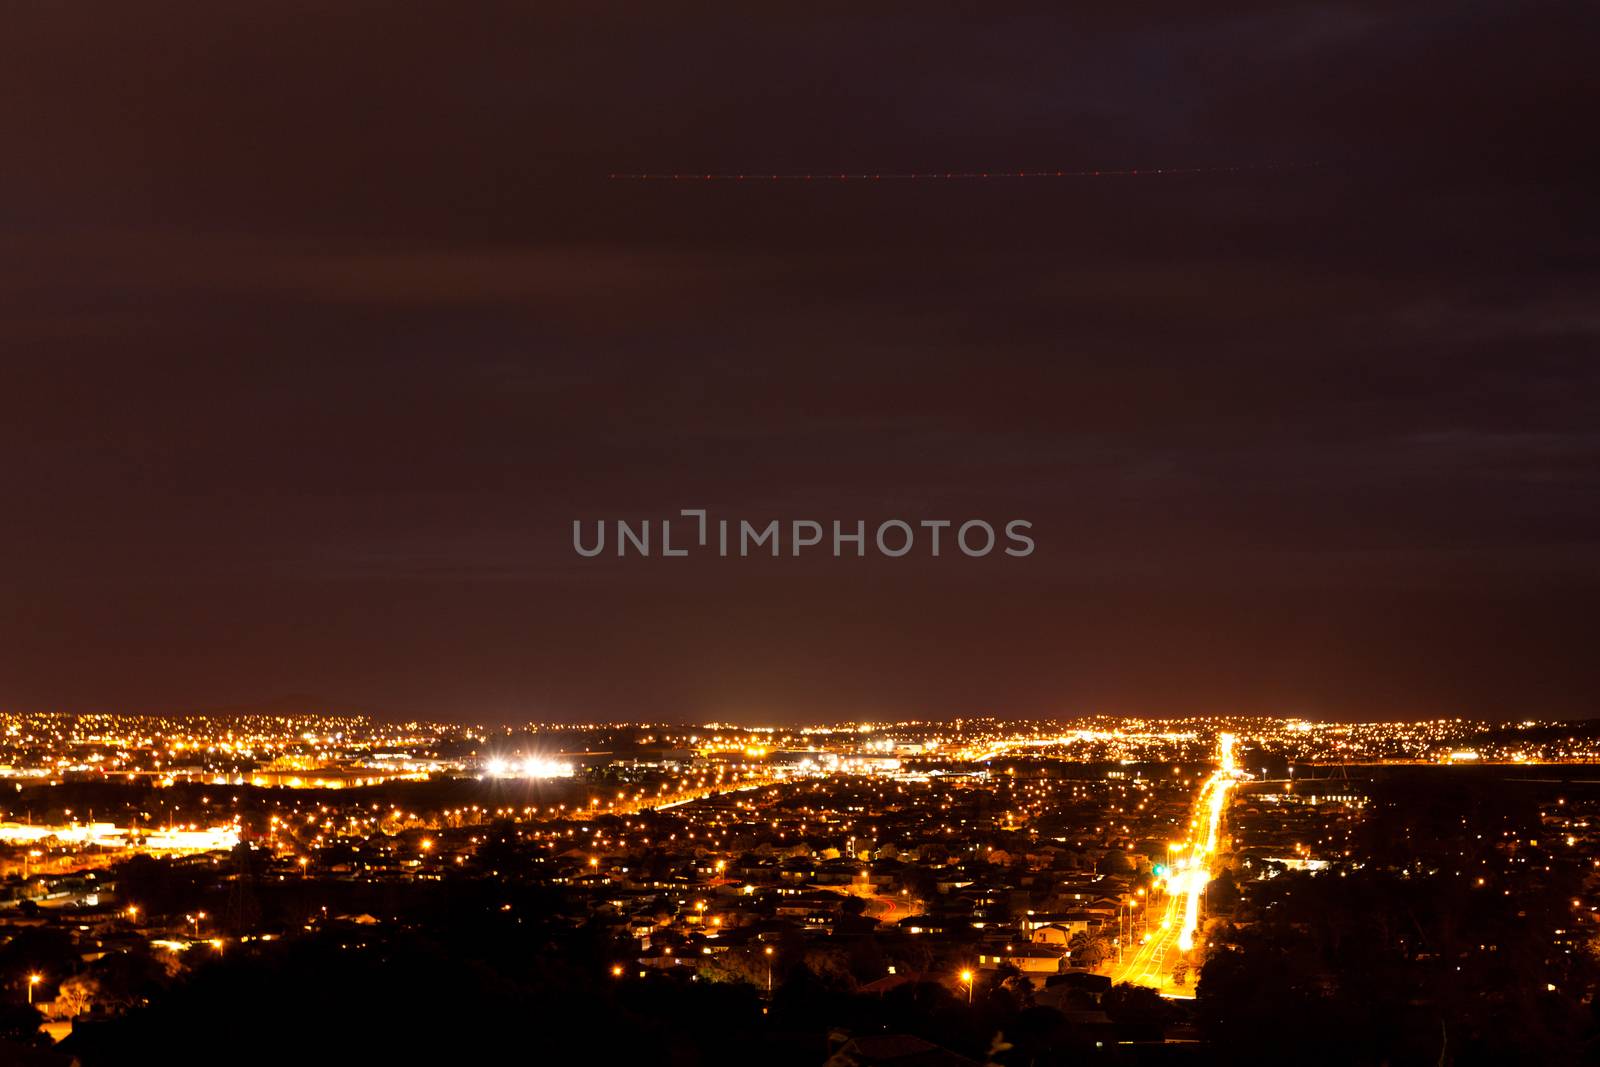 Night over illuminated Manukau, southern suburb of Auckland, New Zealand